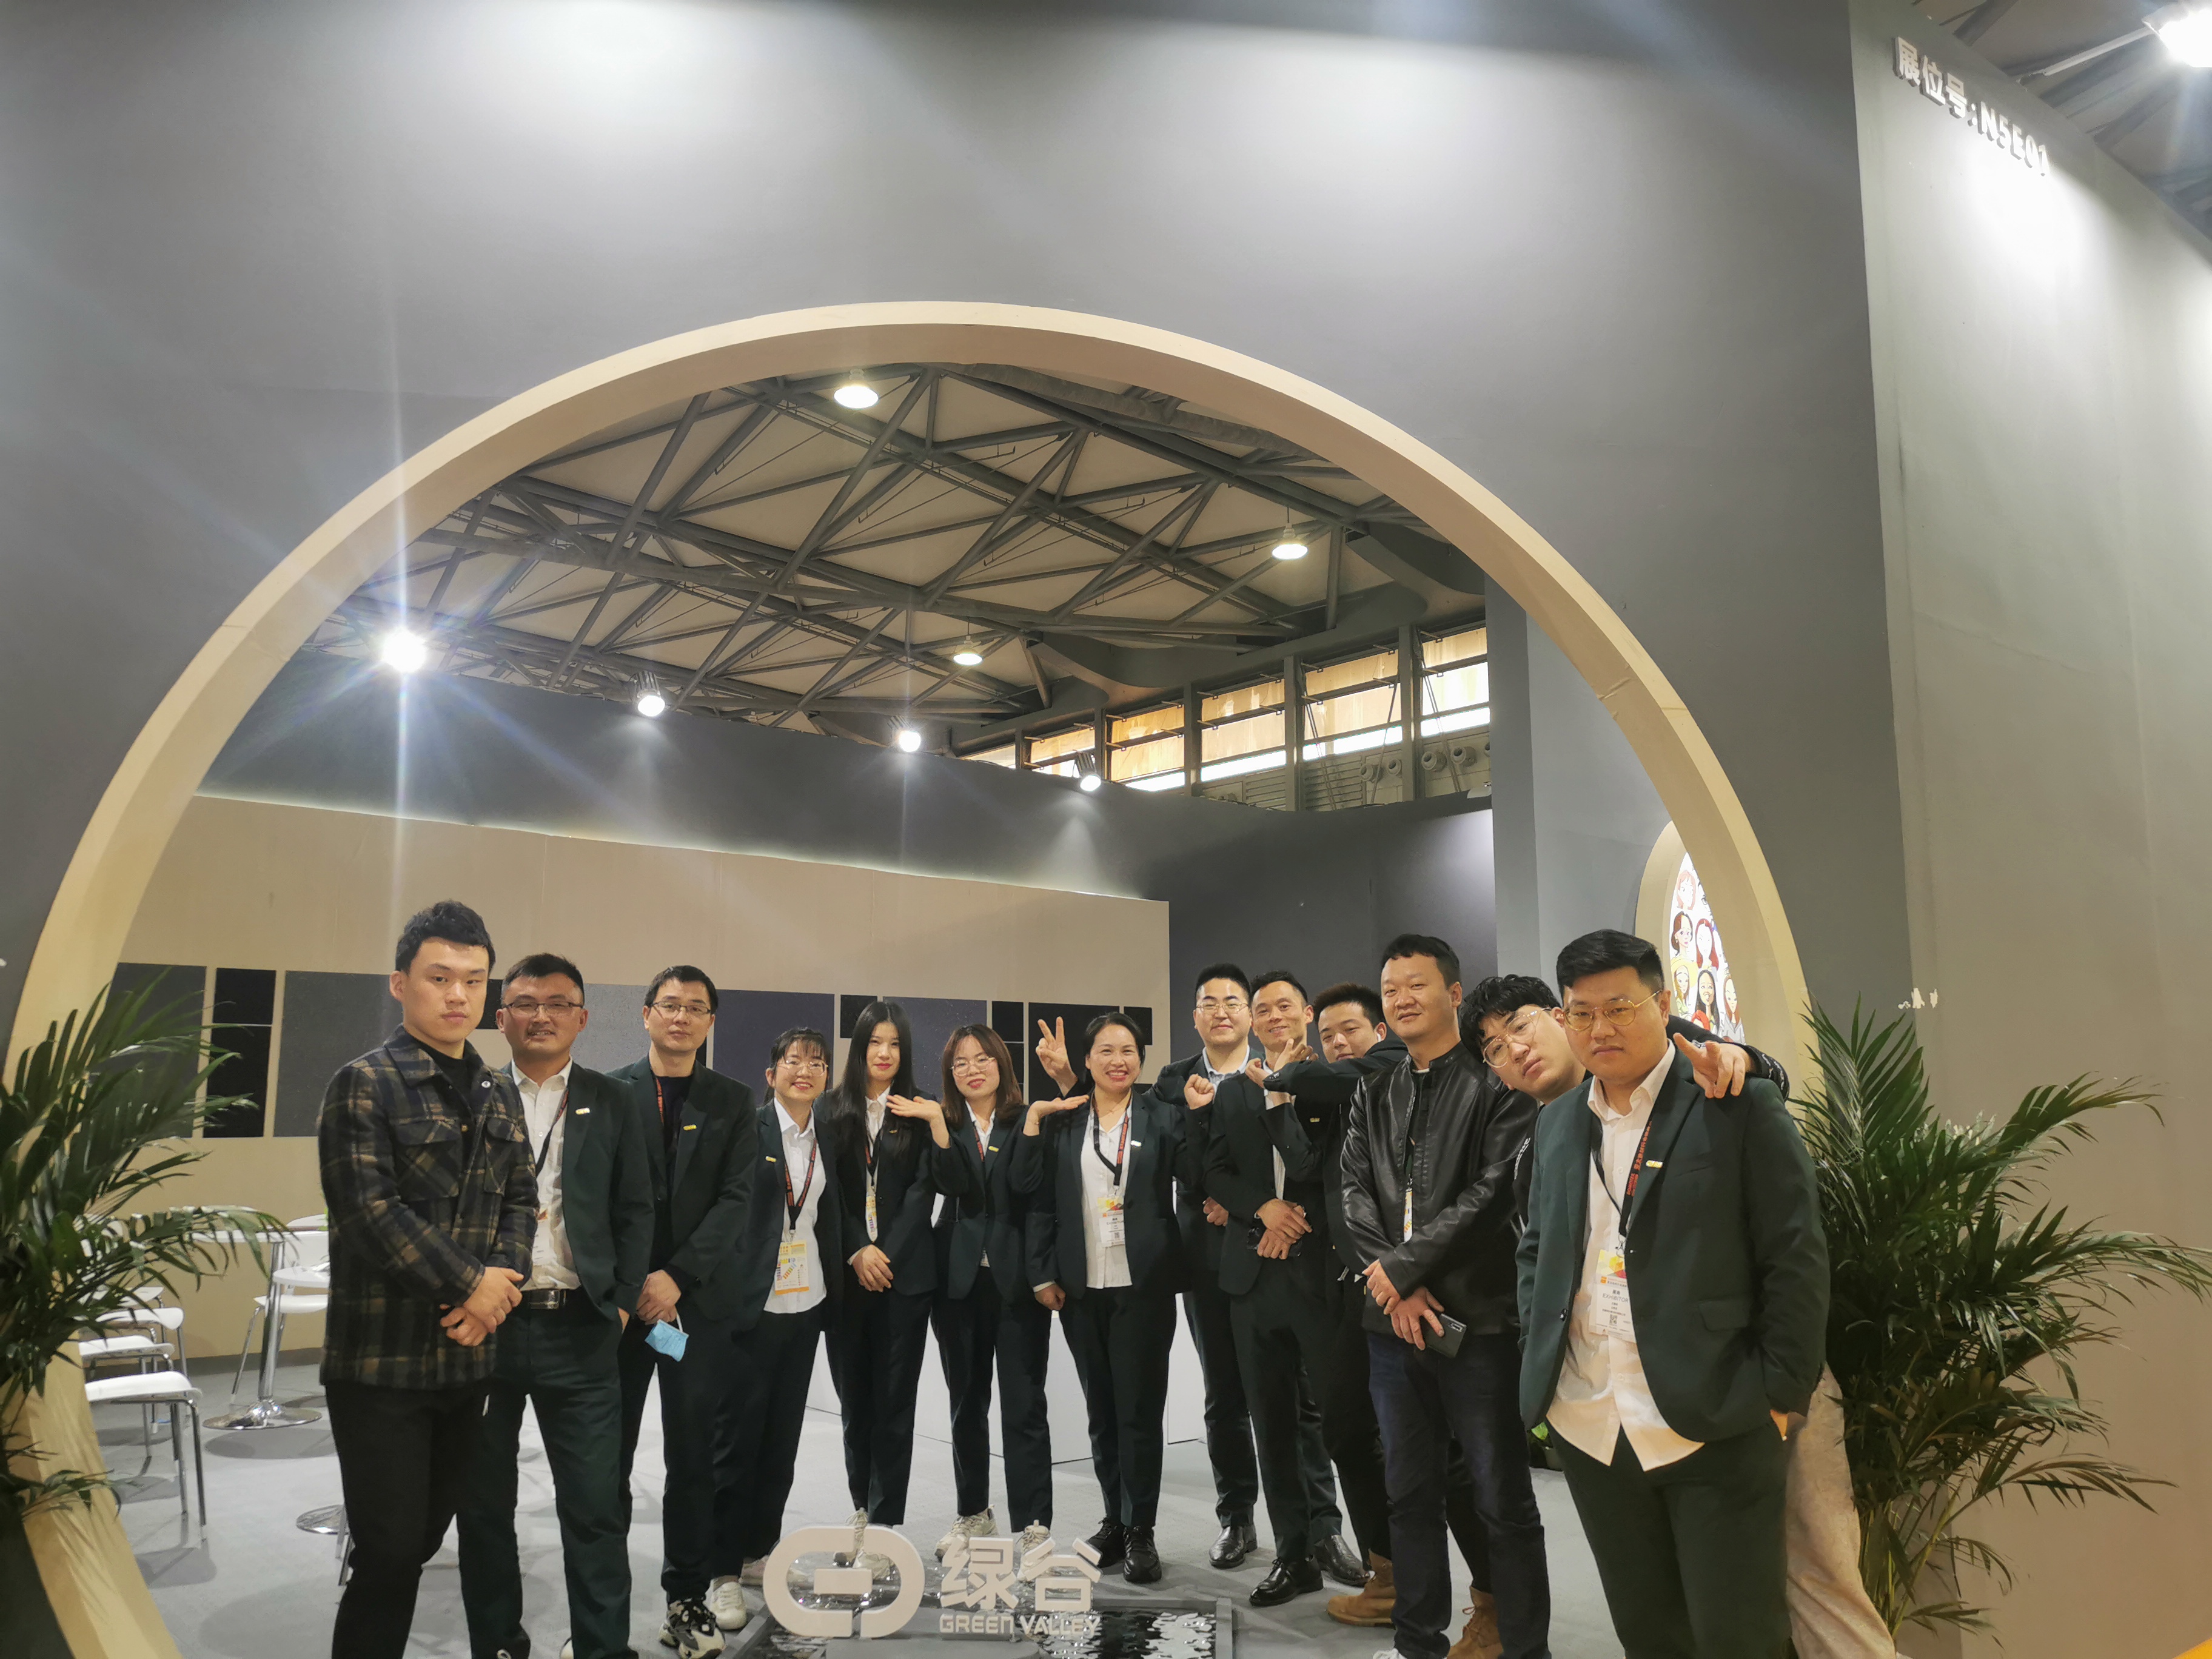 AUSSTELLUNG | Shanghai DOMOTEX Flooring Exhibition, Green Valley feierte ein beeindruckendes Debüt mit den neuesten Produkten